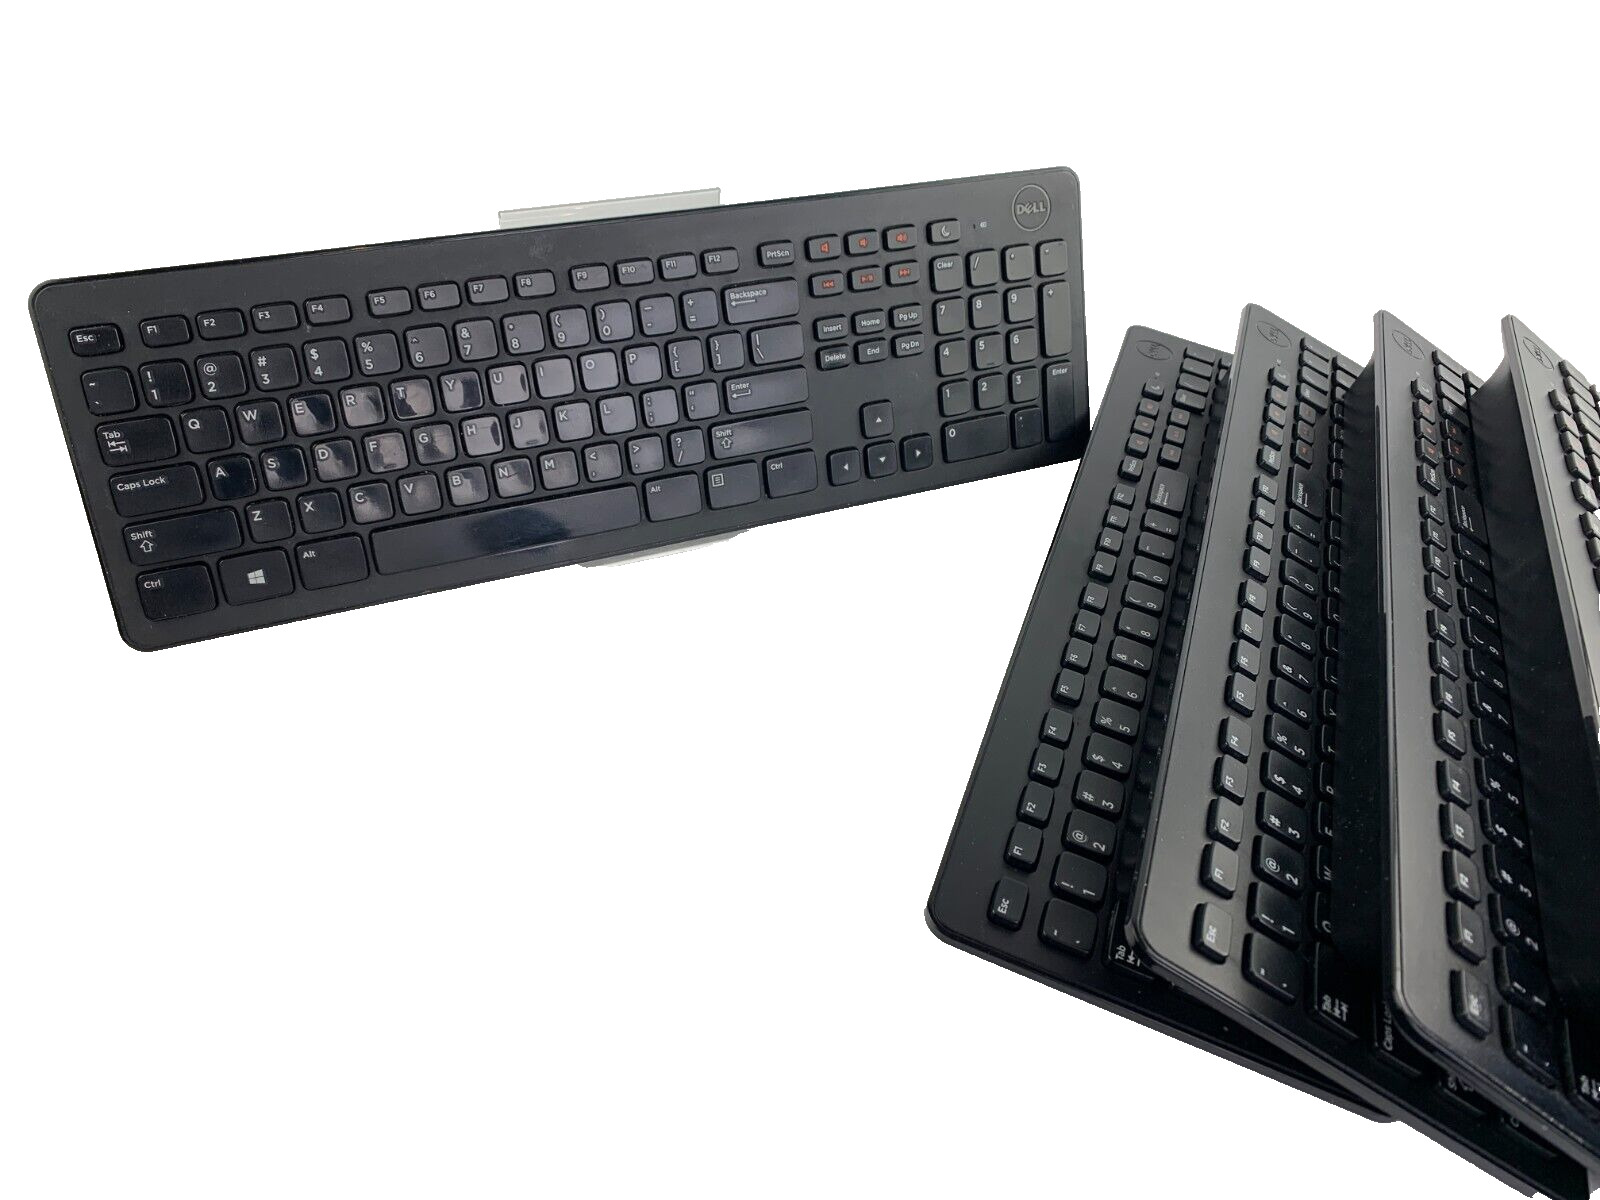 LOT OF 5 -- Dell KM632 Universal Wireless Full Size Keyboard English - NO DONGLE